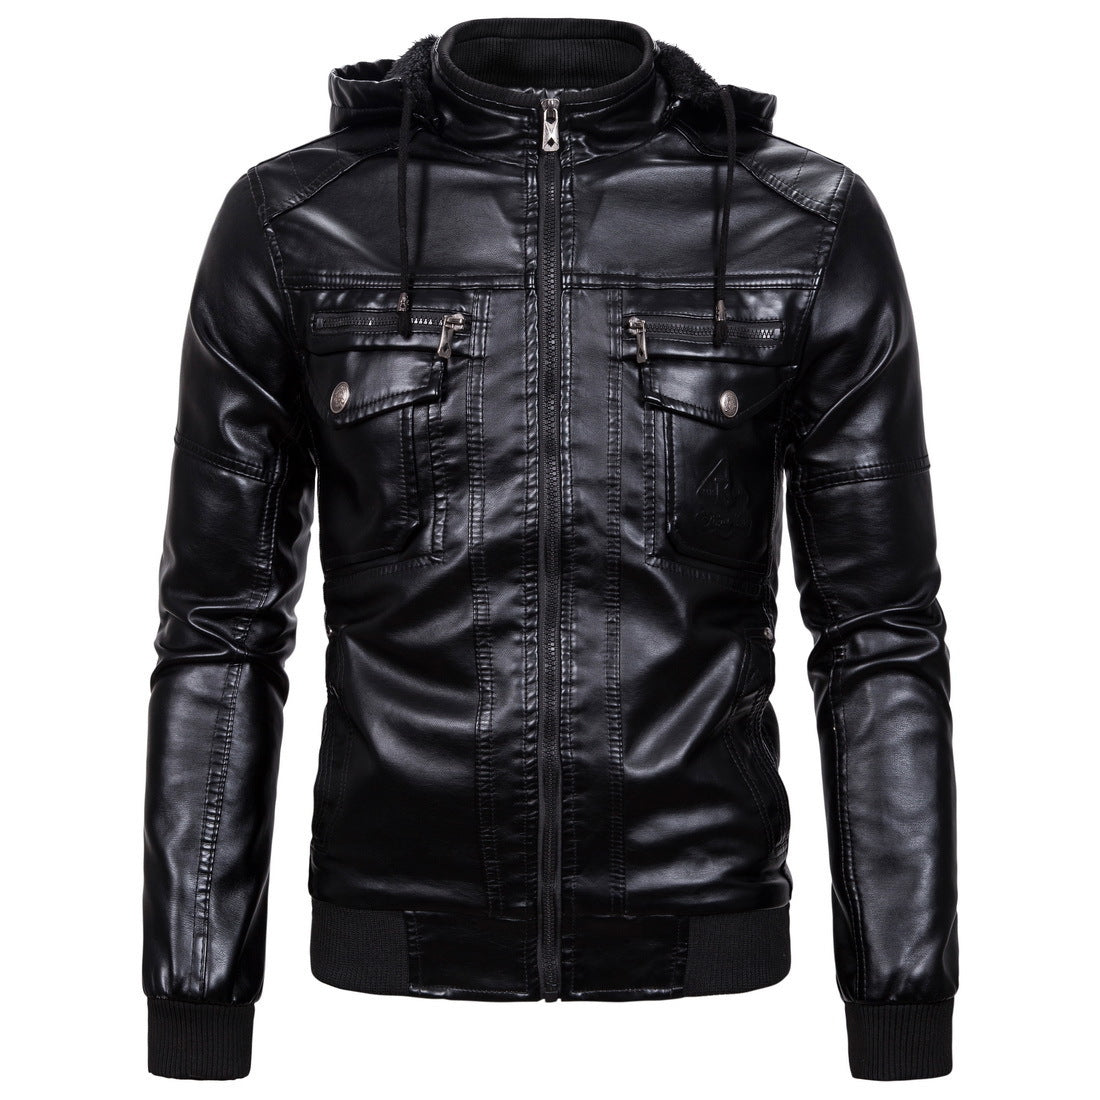 Fleece Warm Leather Jacket With Hooded Leather Jacket